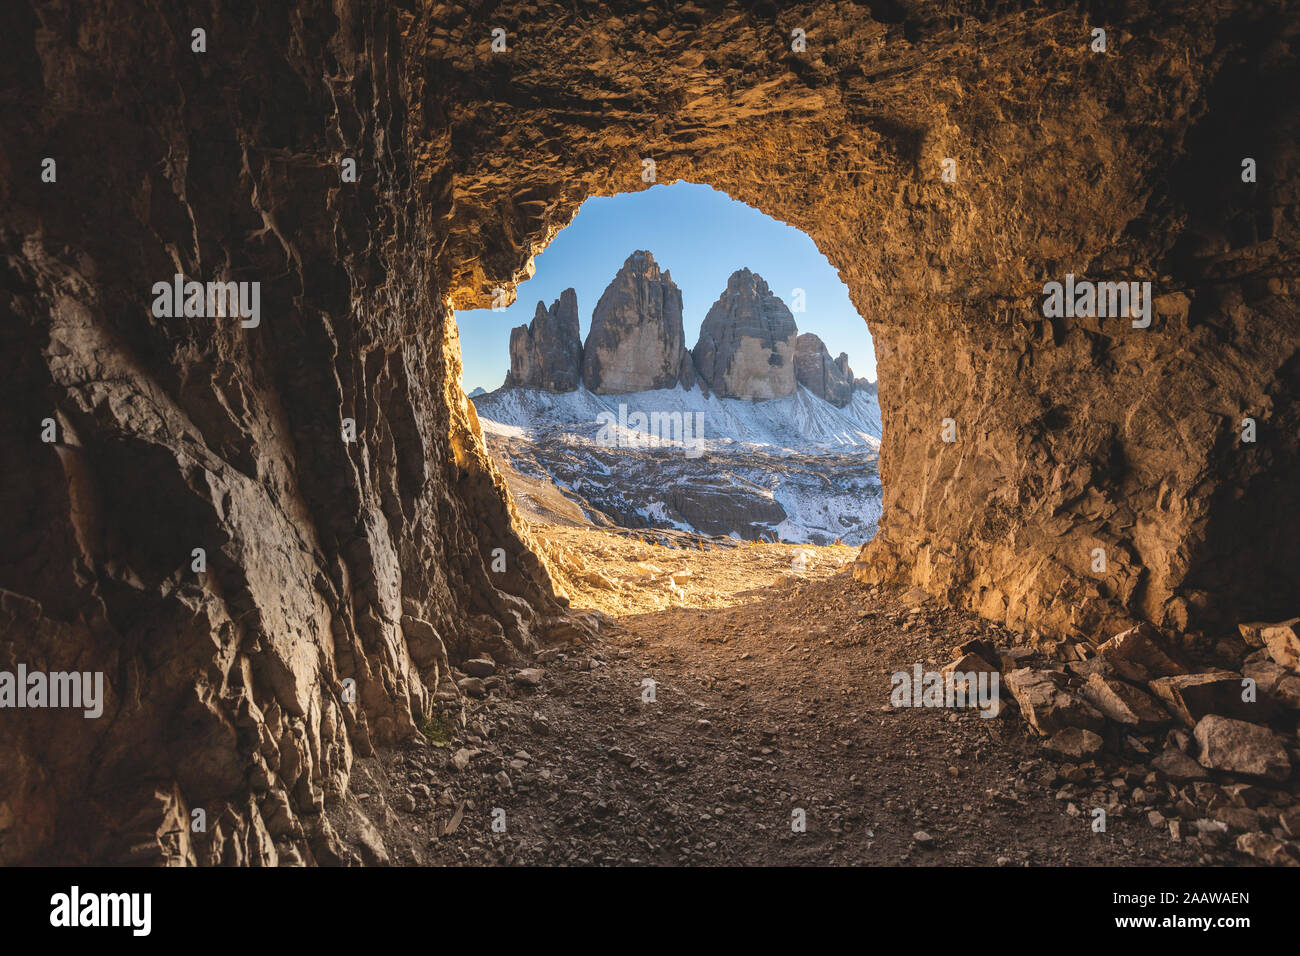 Scenic view of Tre Cime di Lavaredo seen through cave, Italy Stock Photo